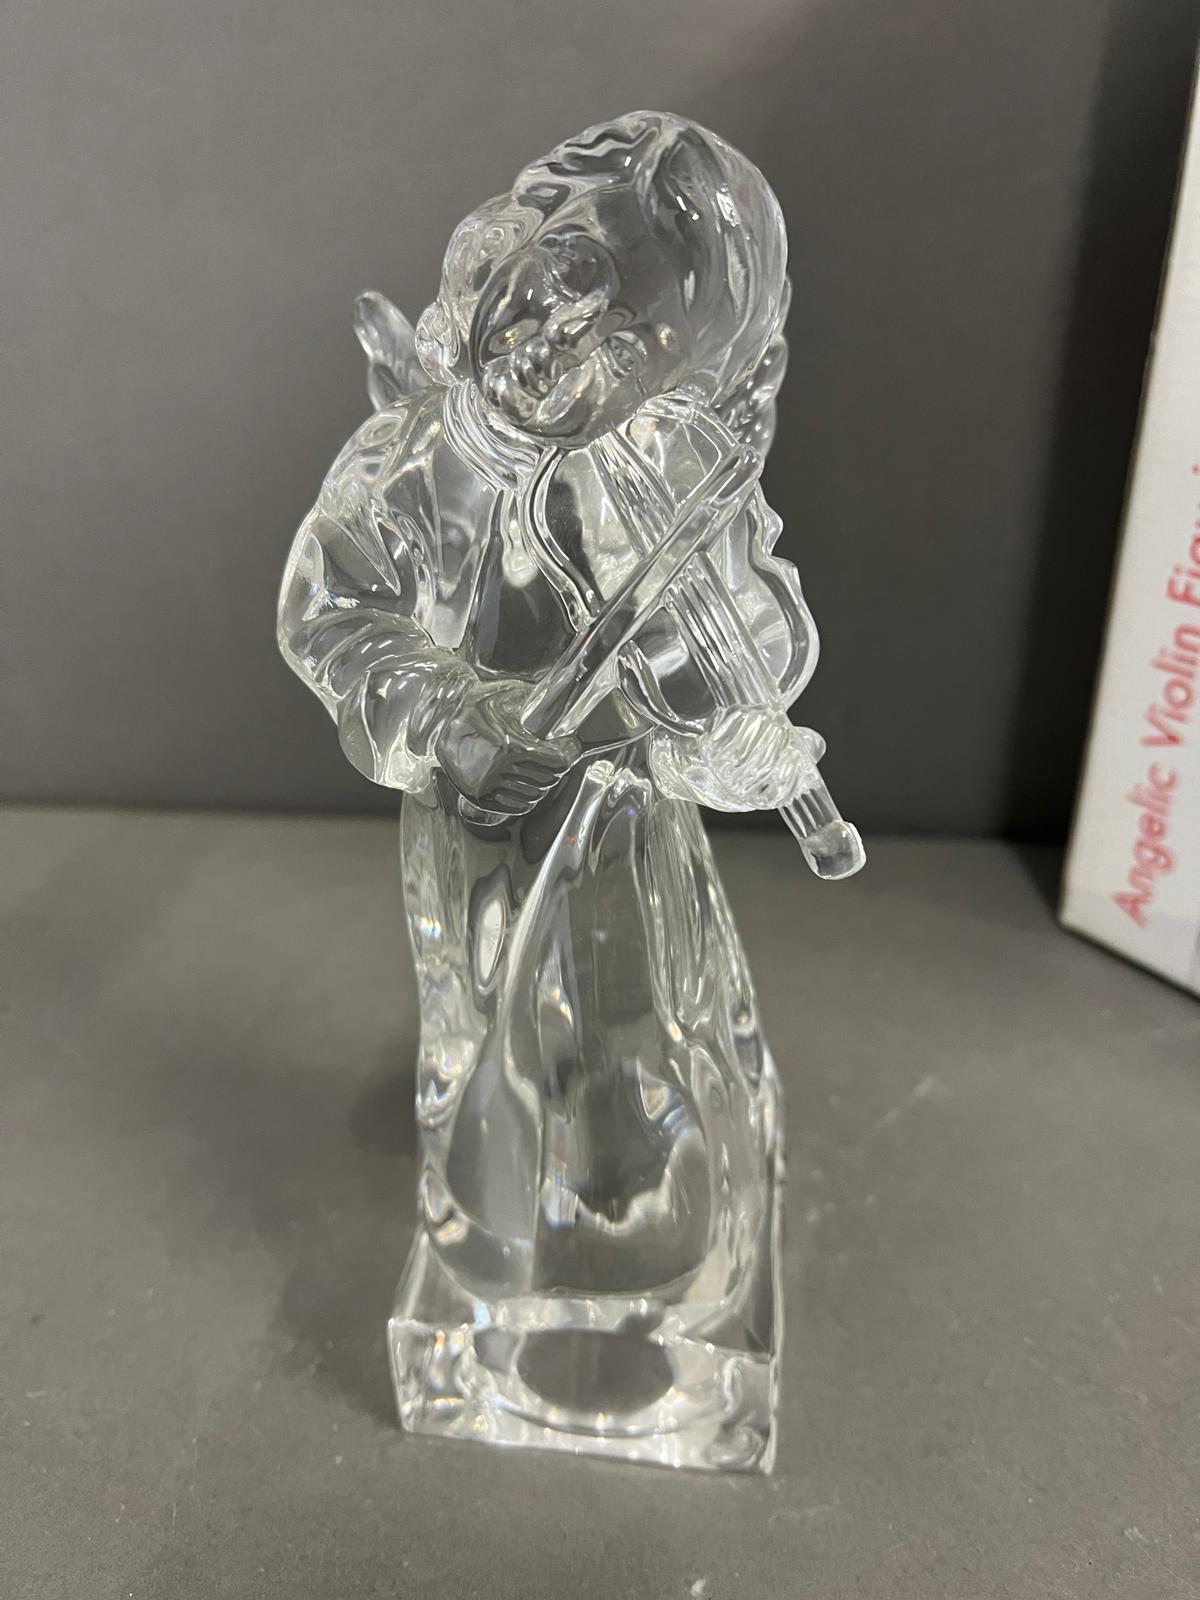 Mikasa Angelic violin figurine, lead crystal - Image 2 of 2